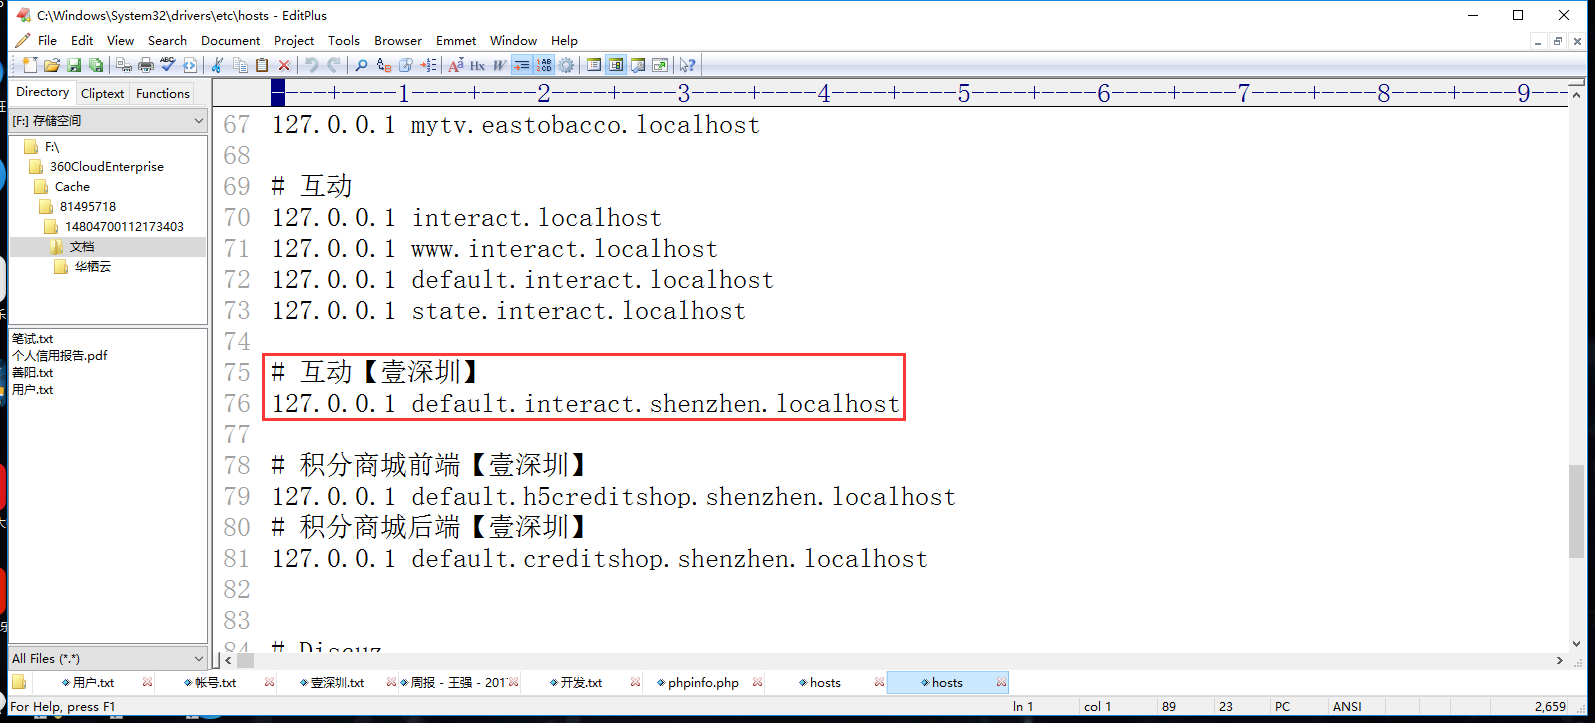 使用域名(default.interact.shenzhen.localhost)连接到本地 摇一摇 网站，编辑hosts，类似于本地的hosts